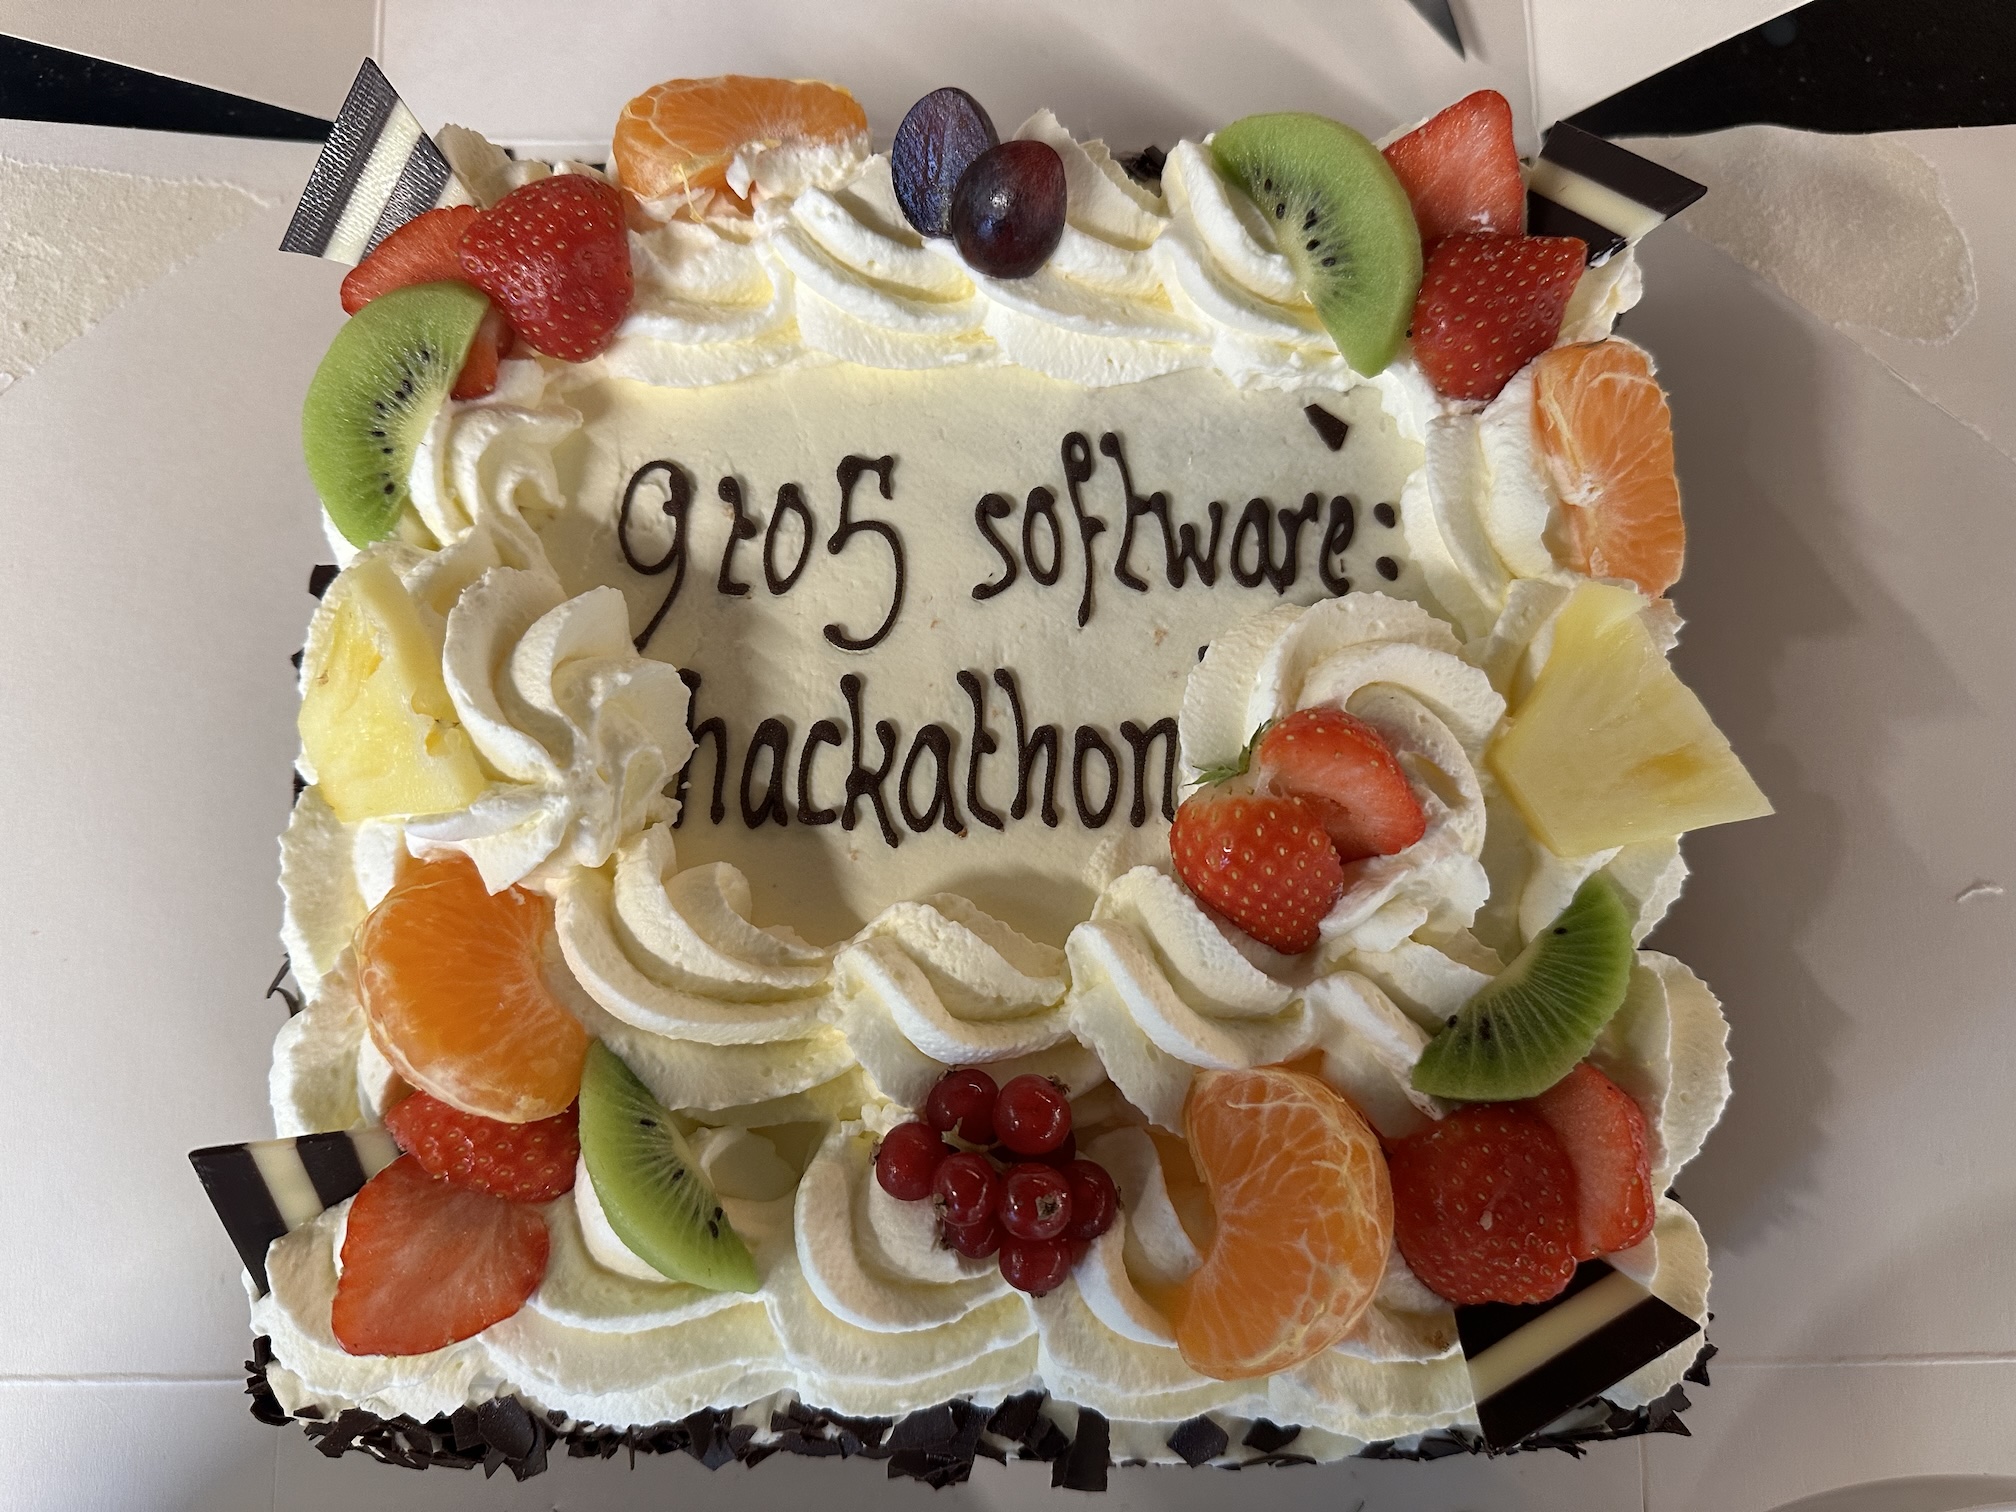 Hackathon - 9to5 cake